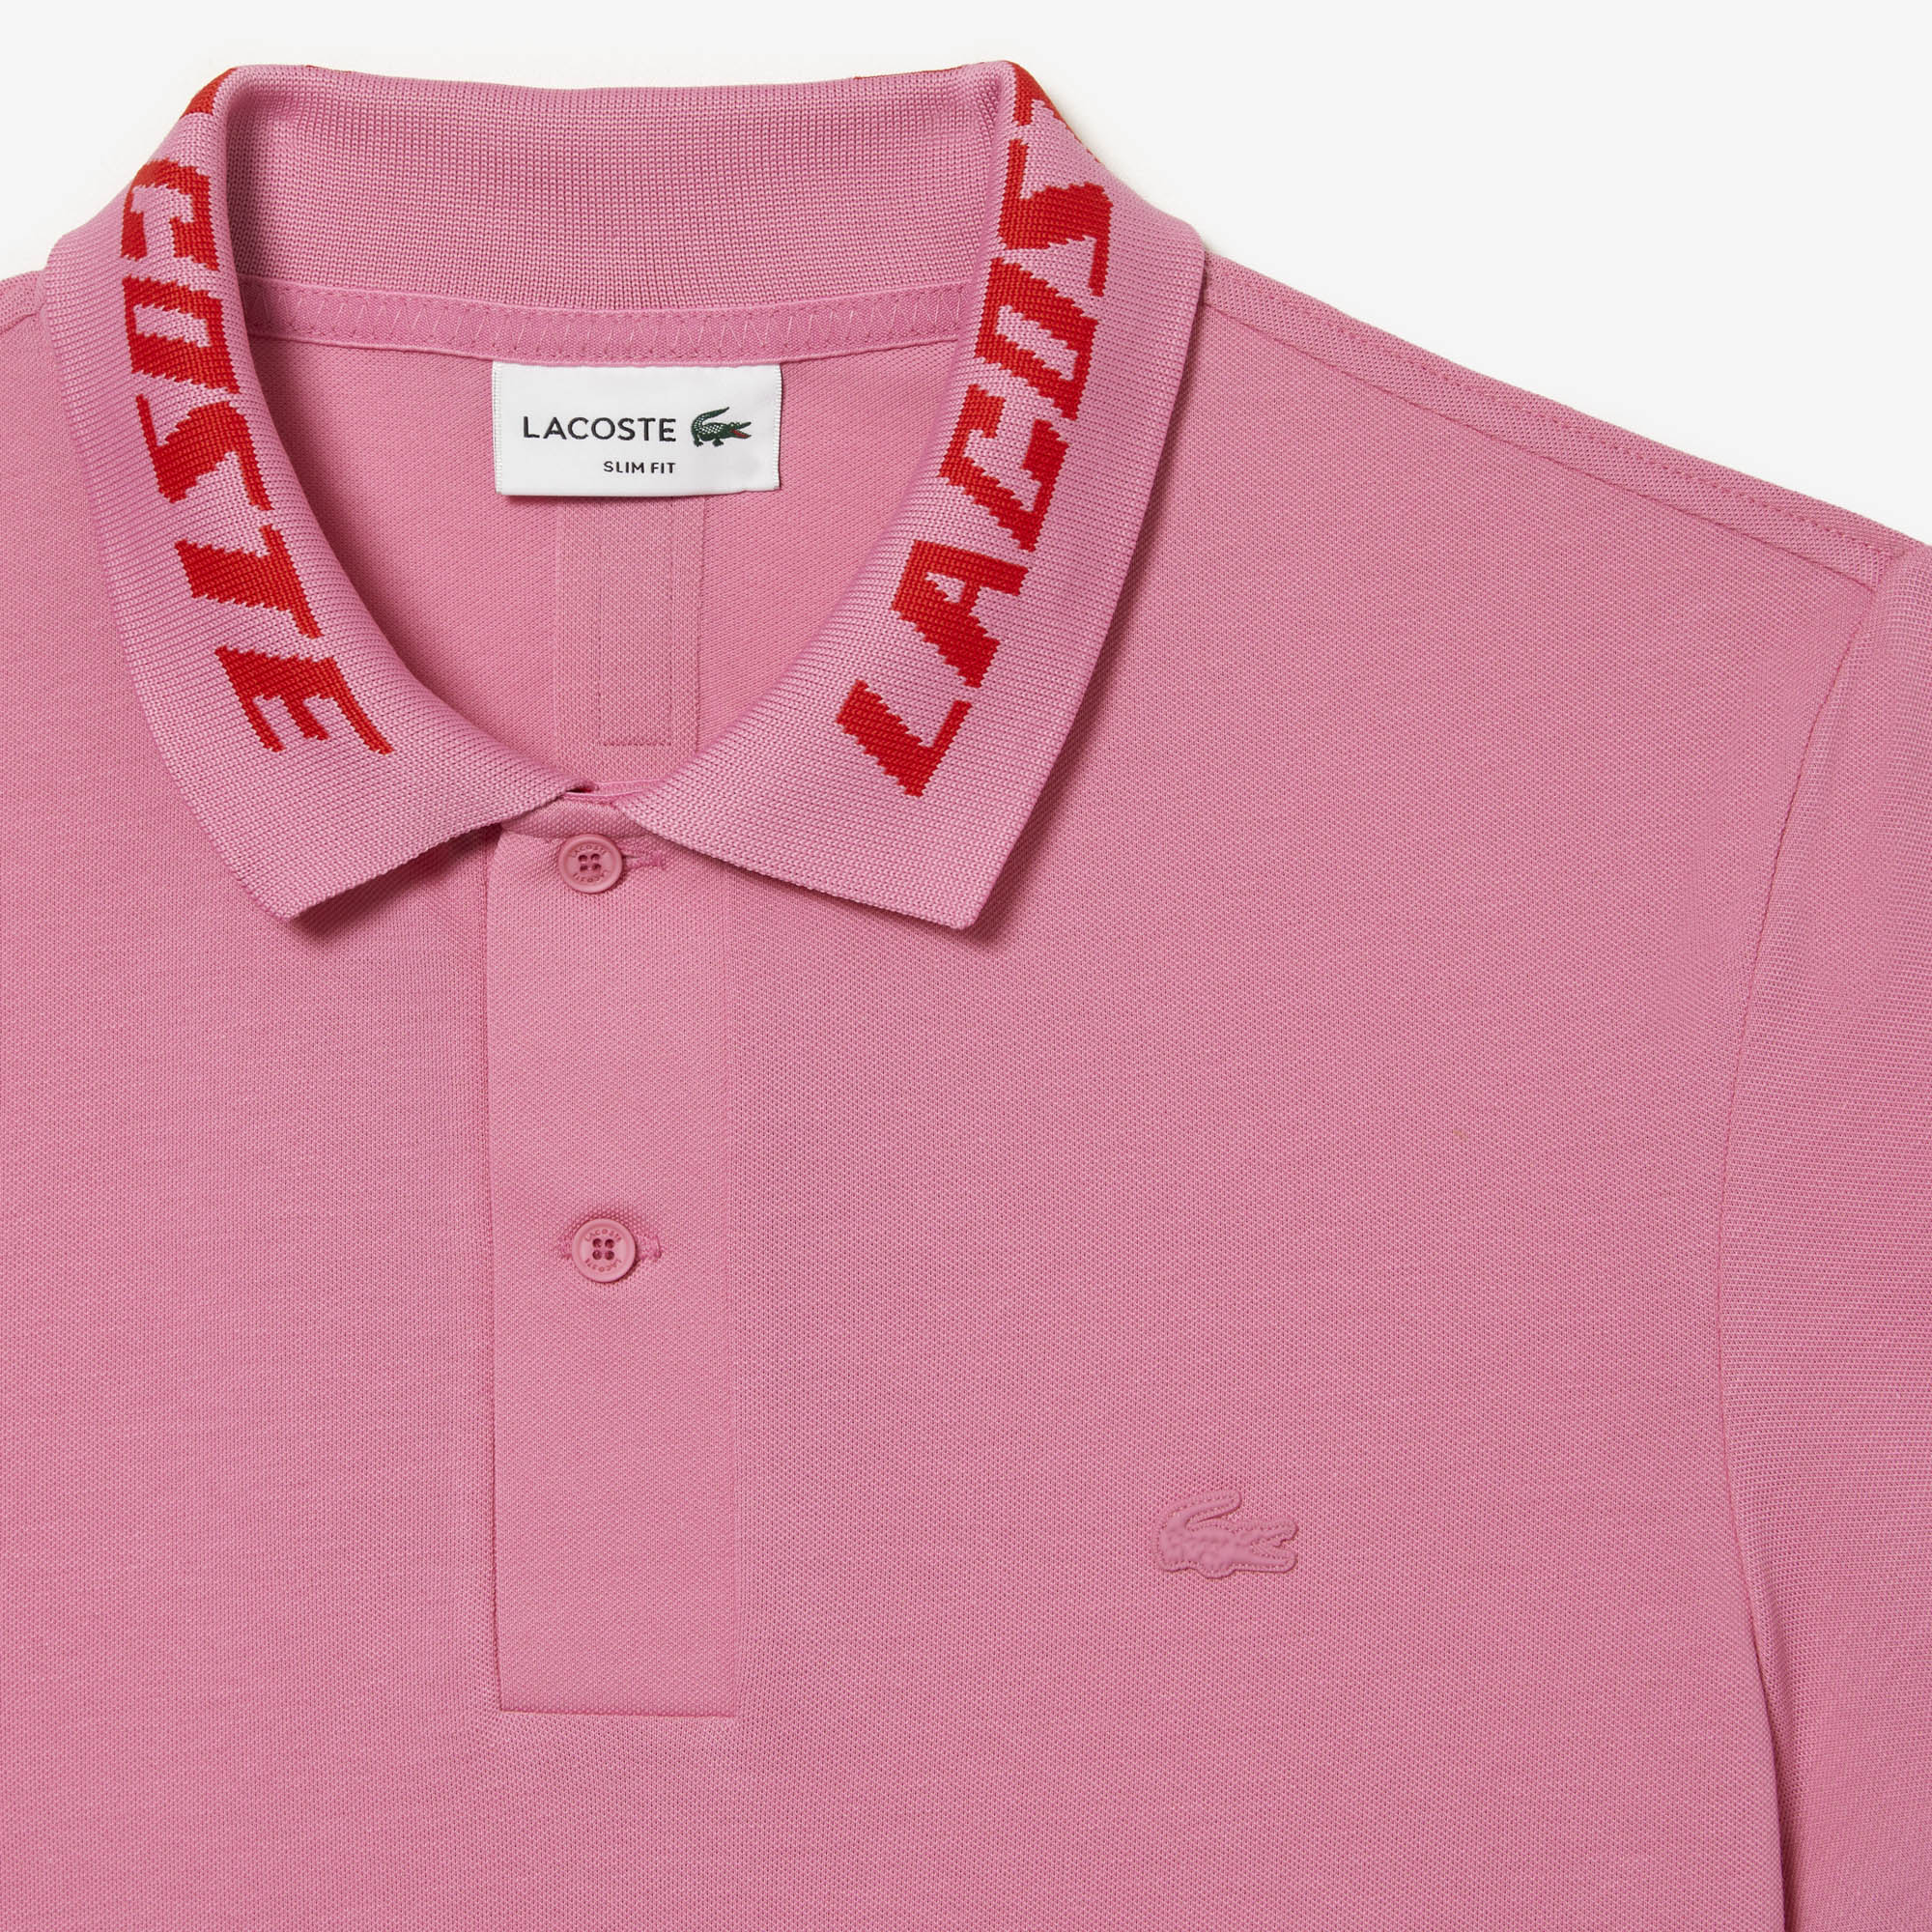 Forfølge sætte ild mosaik APLAZE | Lacoste Men's Branded Slim Fit Stretch Piqué Polo Reseda Pink  PH9642 51 2R3